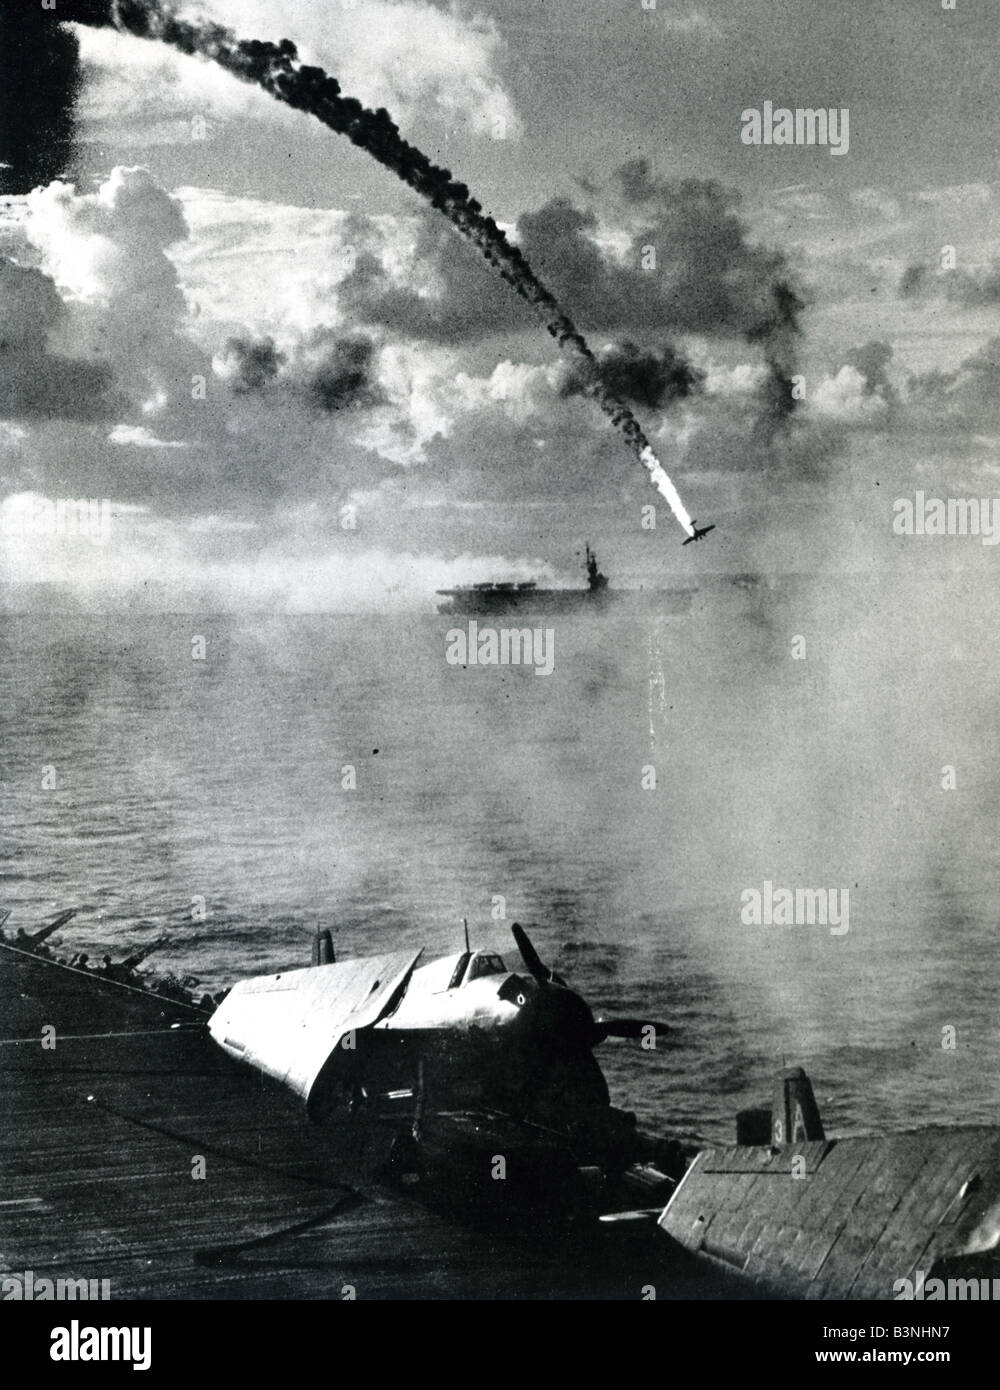 Bombardiere giapponese è colpito dal fuoco proveniente dal USS Hornet il 18 marzo 1945 nei pressi di Iwo Jima nel Pacifico Foto Stock